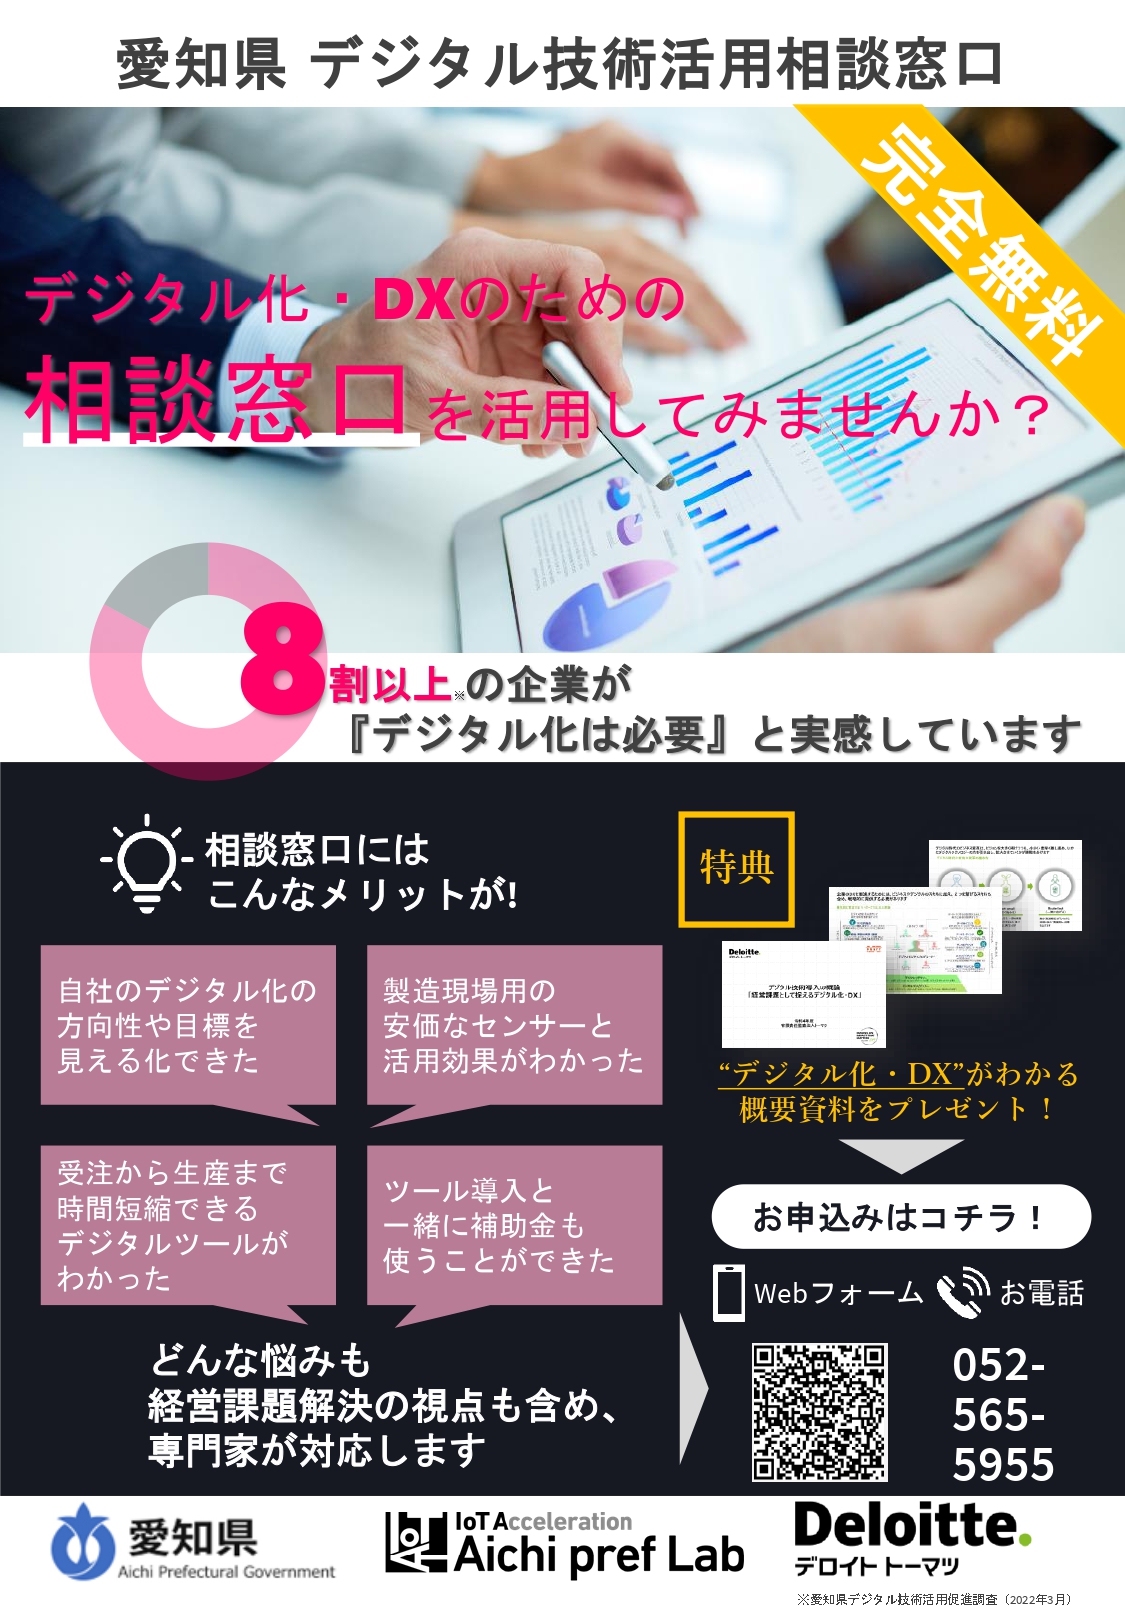 「愛知県デジタル技術活用相談窓口」を開設します